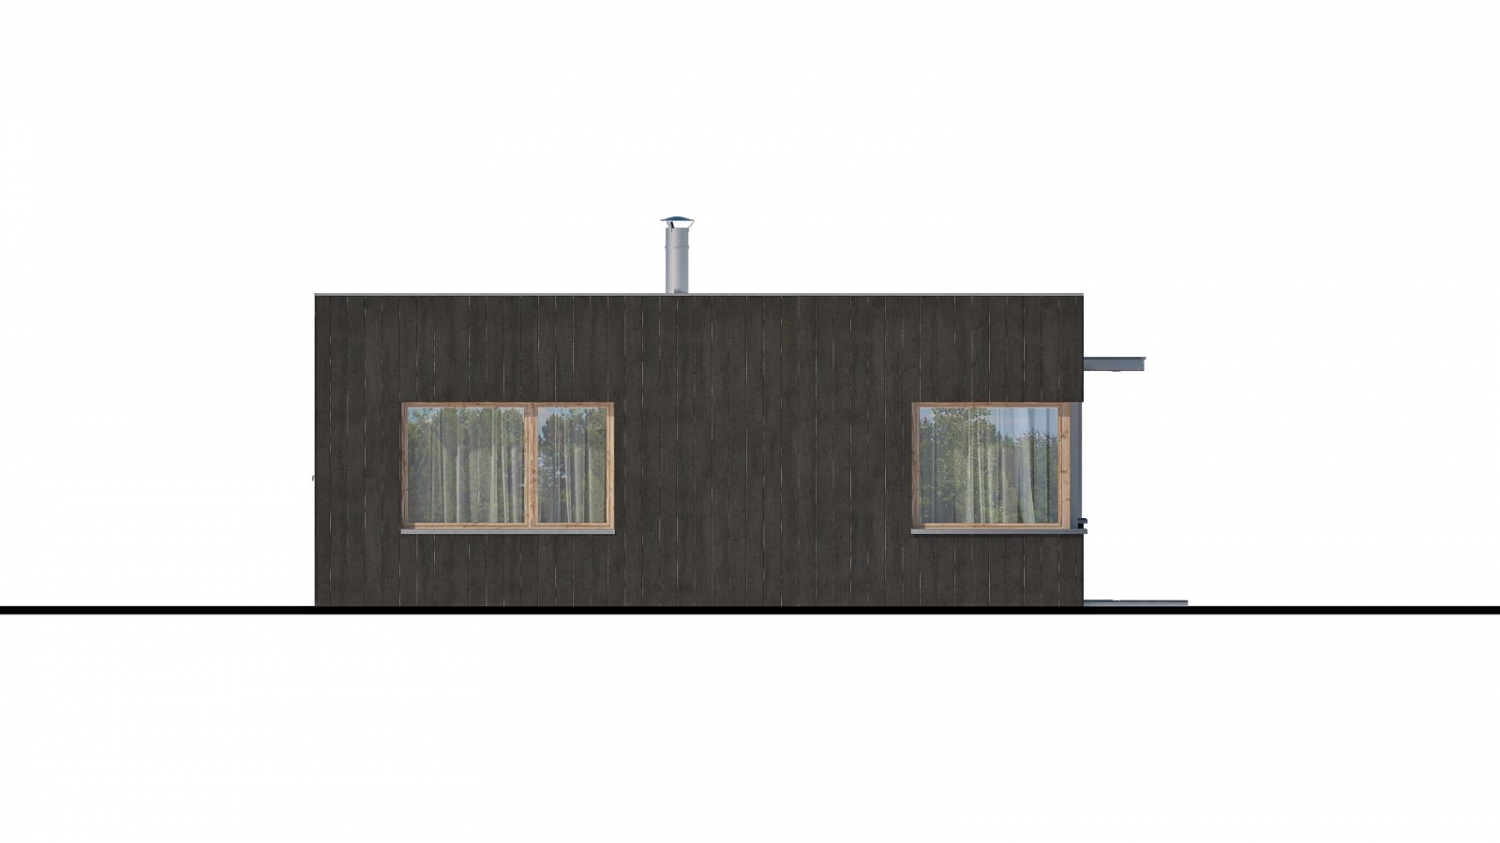 Pohľad 4. - Moderní malý projekt rodinného domu s plochou střechou na úzký pozemek. Na prosvětlení chodby slouží světlík Velux.